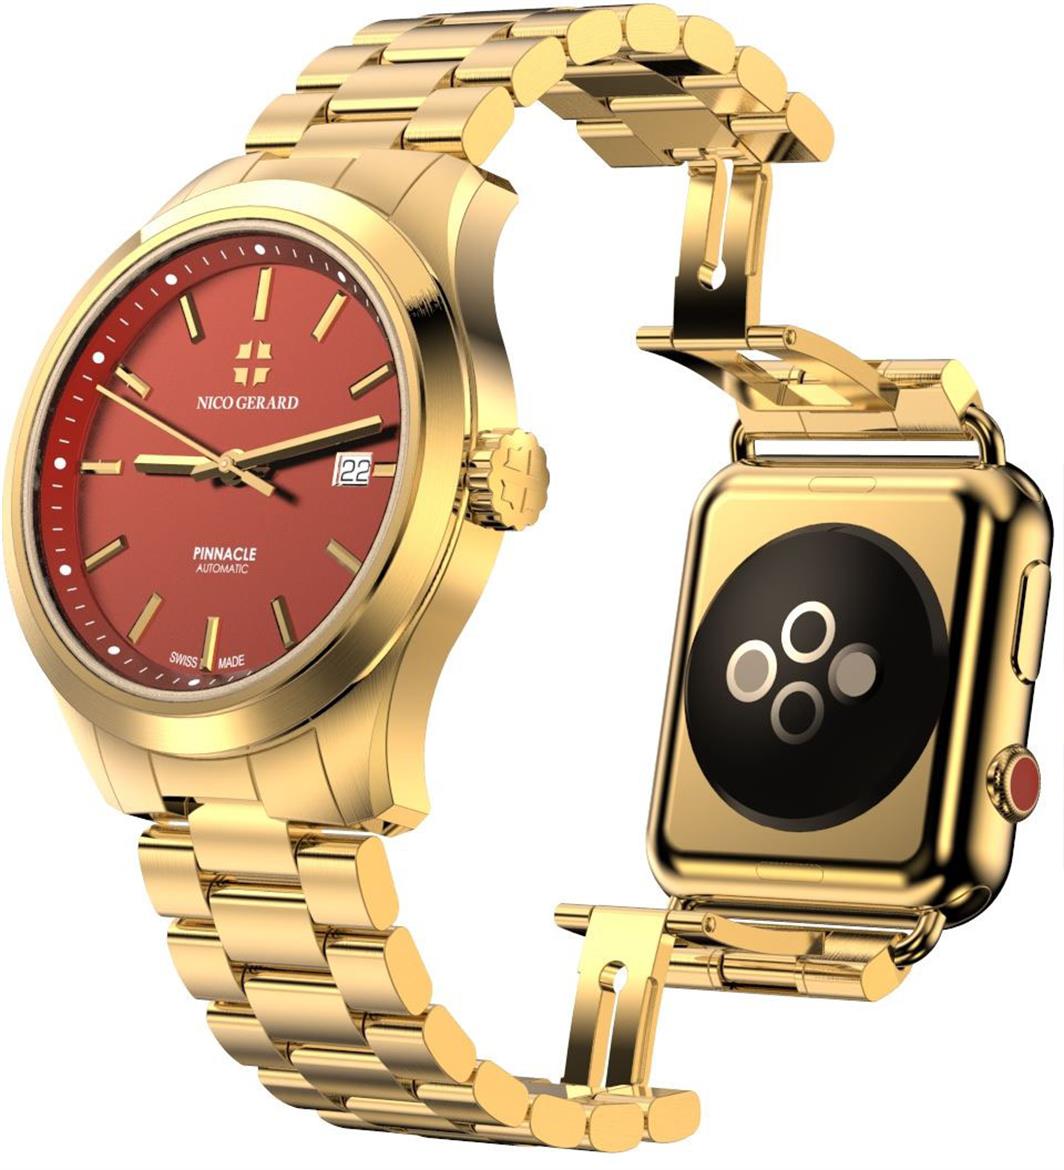 Yo Dawg! Nico Gerard Xzibits $9,000 Analog Watch That Straps To Apple Watch